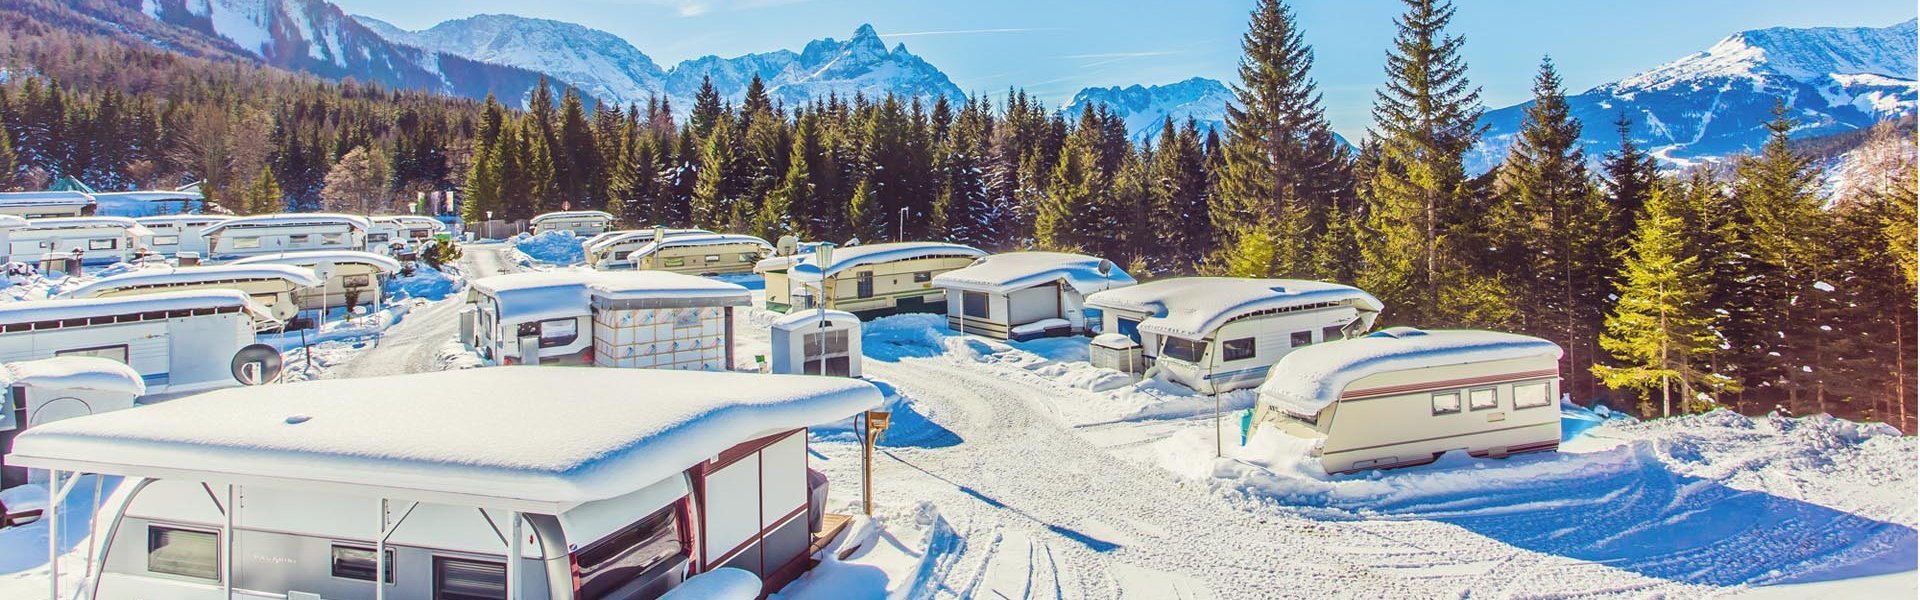 Verschneiter Campingplatz Zugpsitz Resort